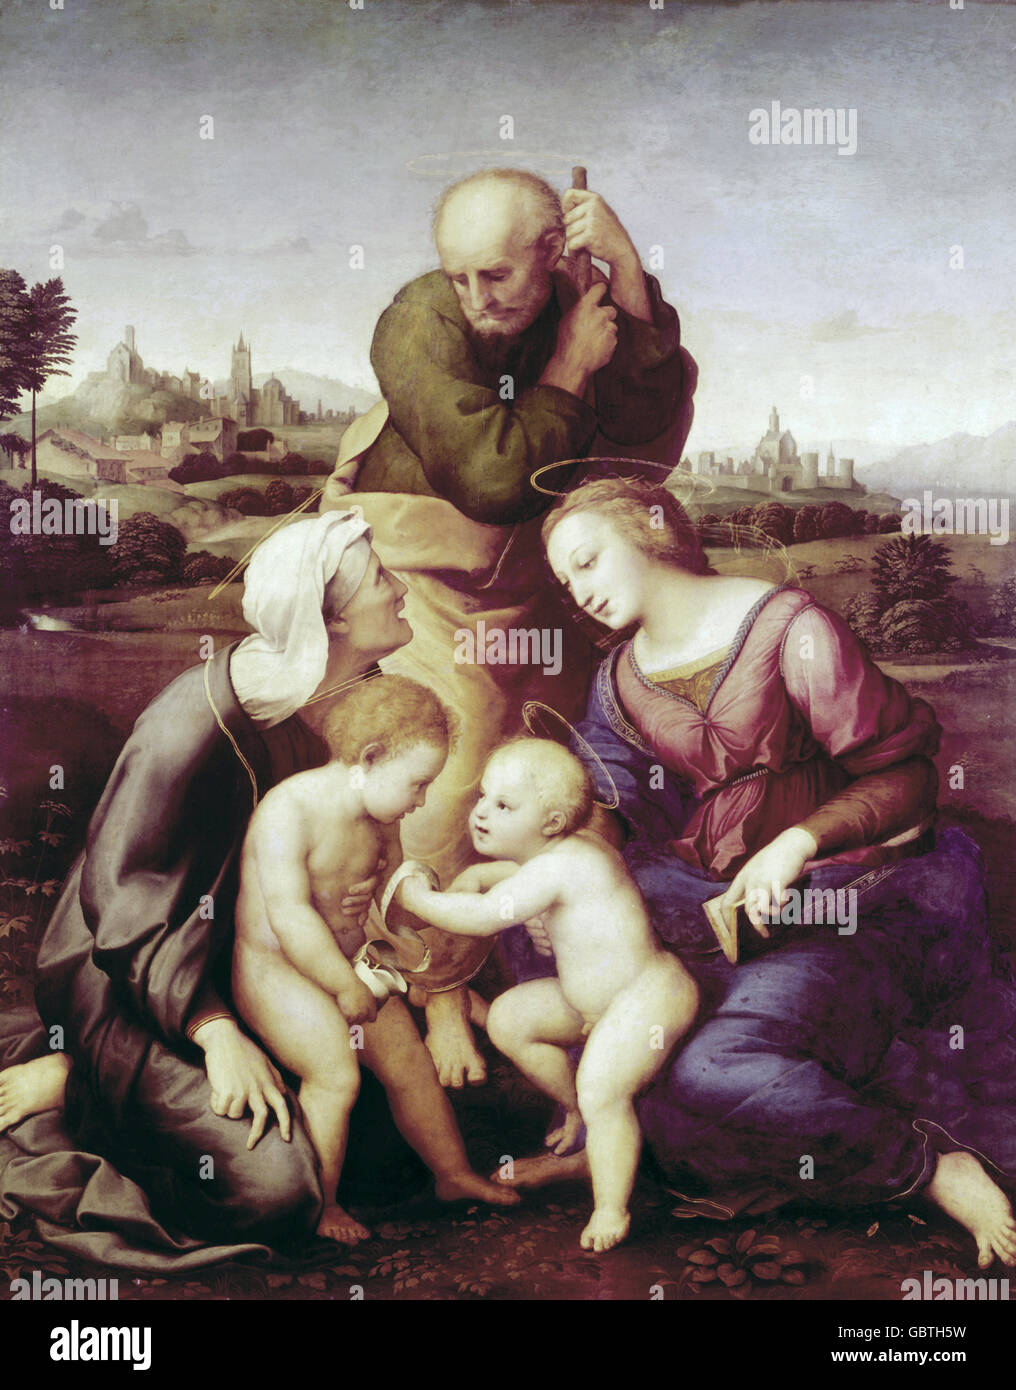 Bildende Kunst, Raffael (Raffaello Santi) (6.4.1483 - 6.4.1520), "Die Canigiani Heilige Familie" Malerei, ca. 1505/1506, Öl auf Holz, 131 x 107 cm, Neue Pinakothek, München Stockfoto